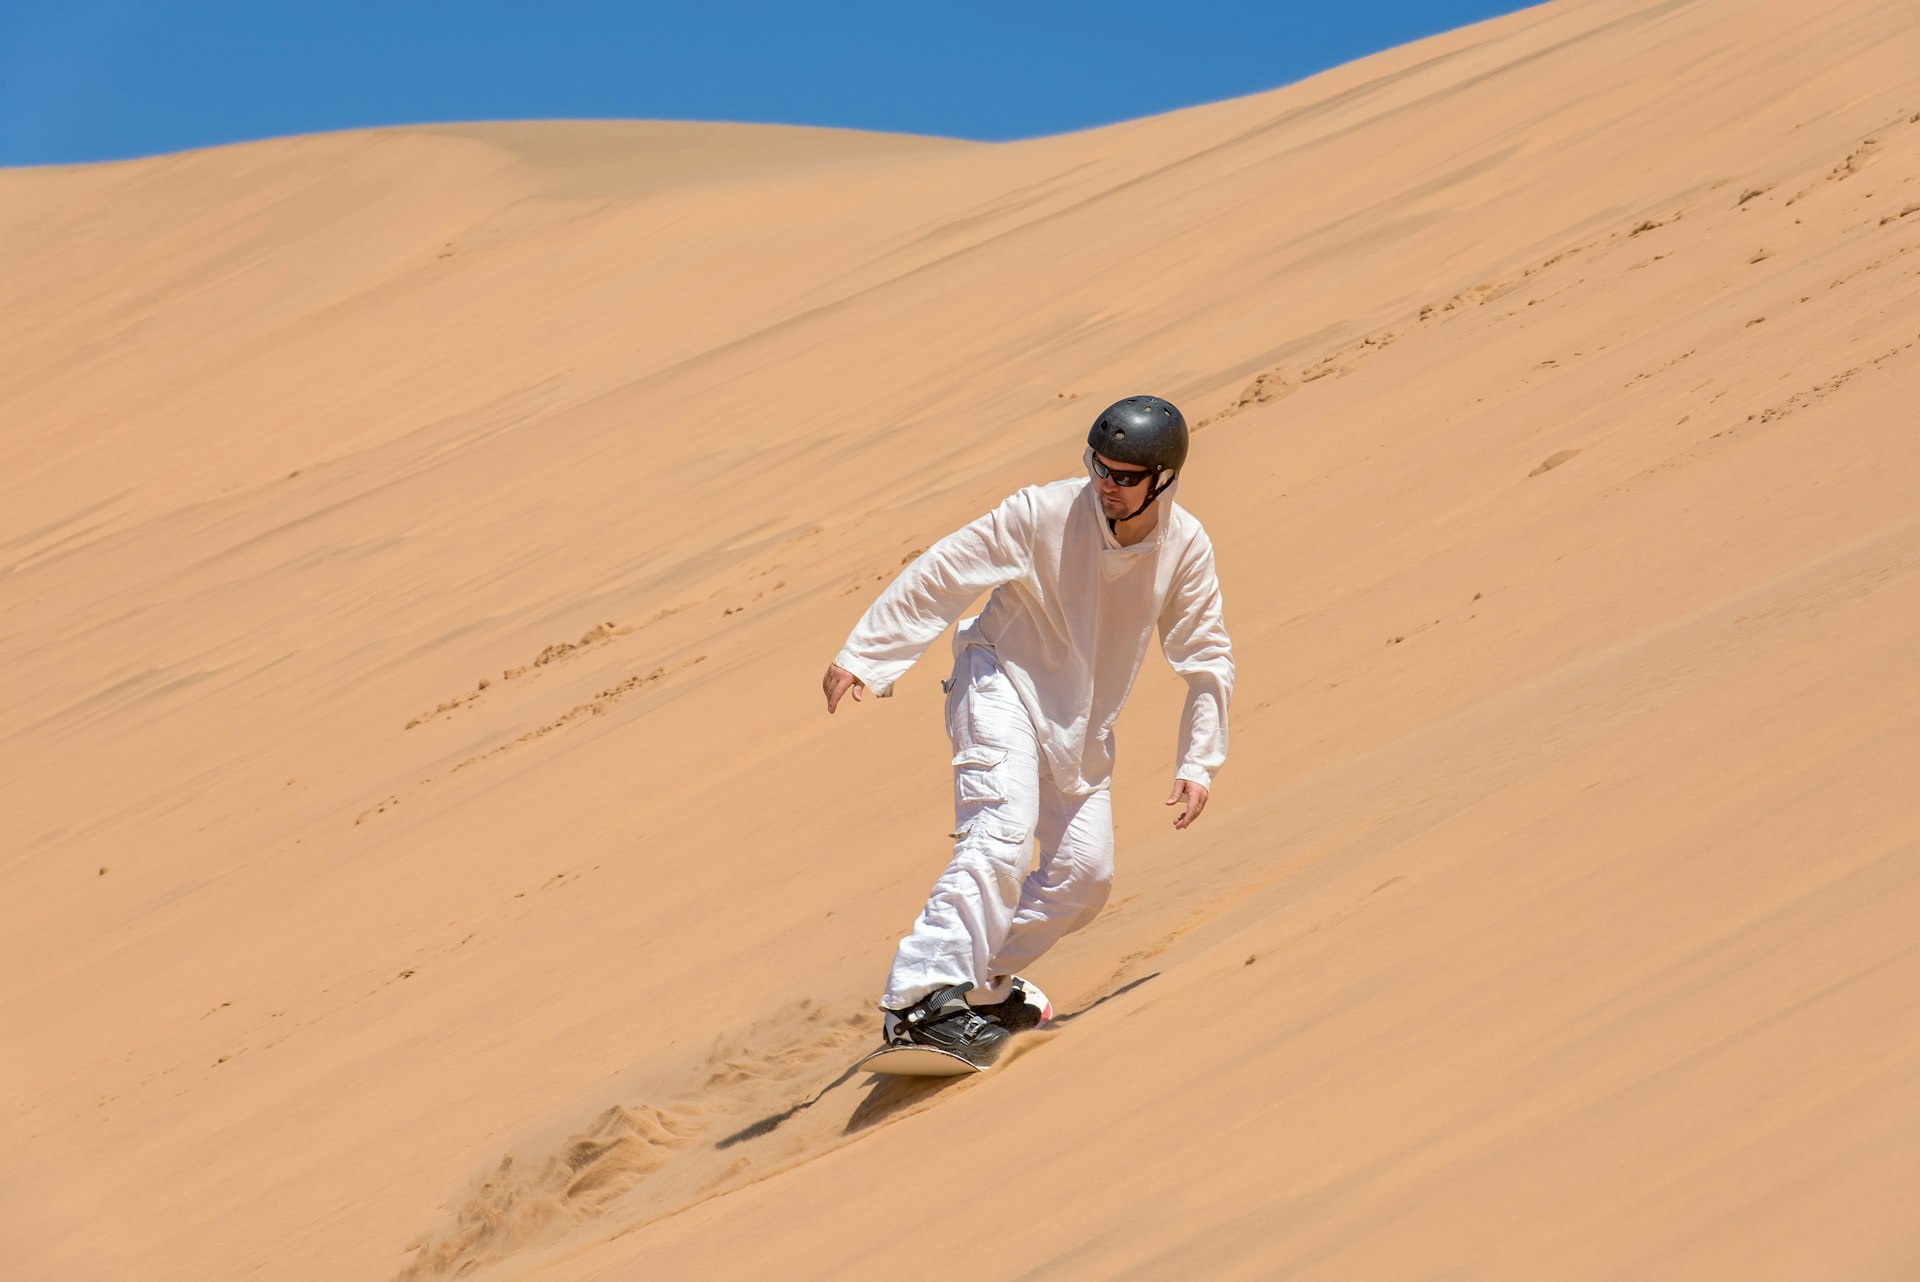 Sandboarder in action near Swakopmund, Namibia